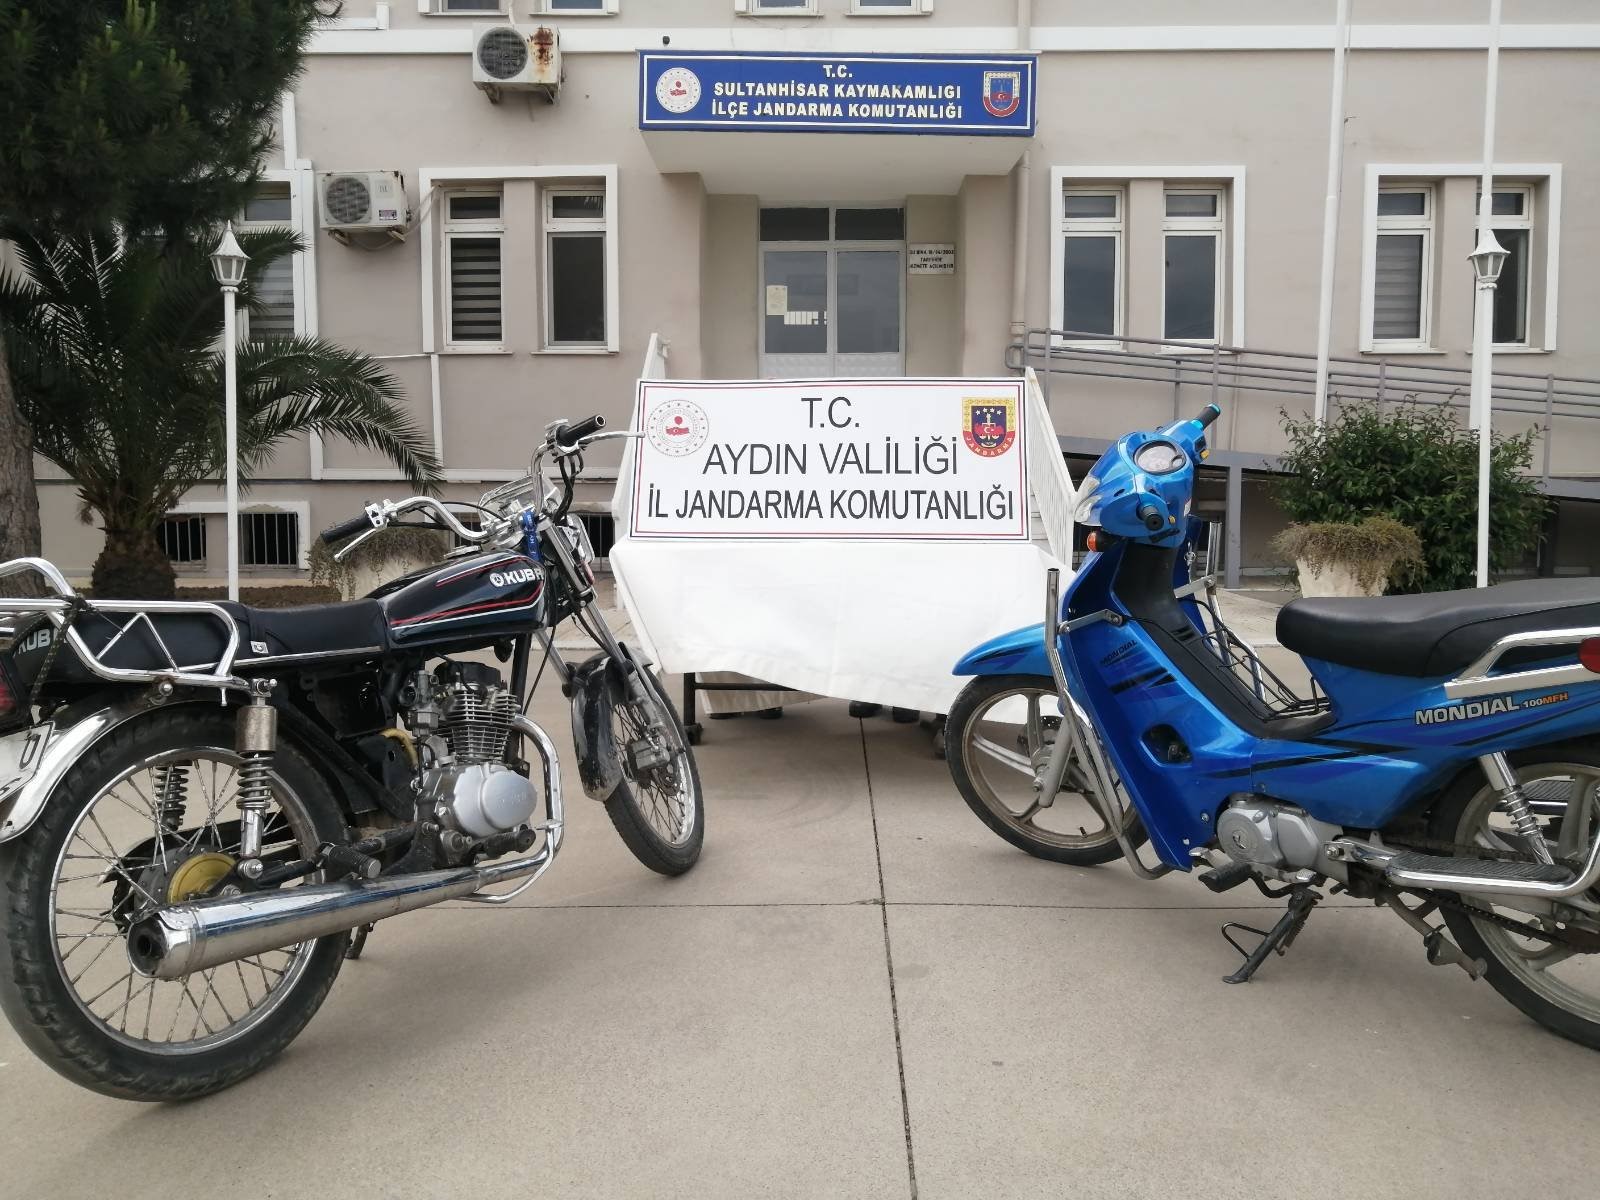 Sultanhisar'da Yakalanan 2 Motosiklet Kriminal Laboratuvara Gönderilecek 1